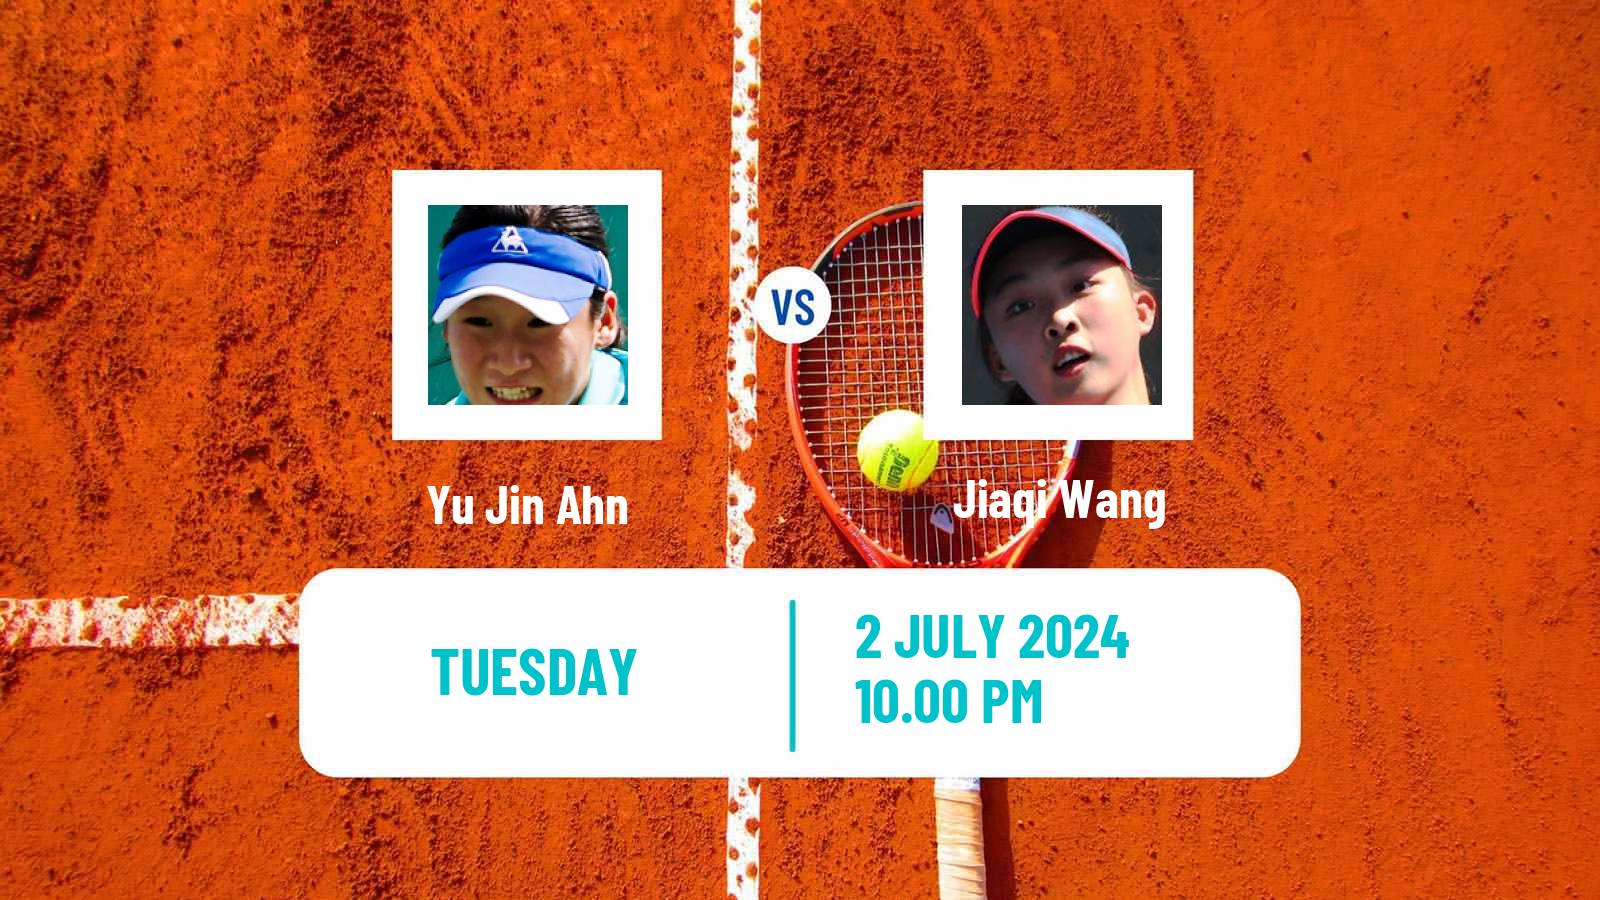 Tennis ITF W15 Tianjin 2 Women Yu Jin Ahn - Jiaqi Wang